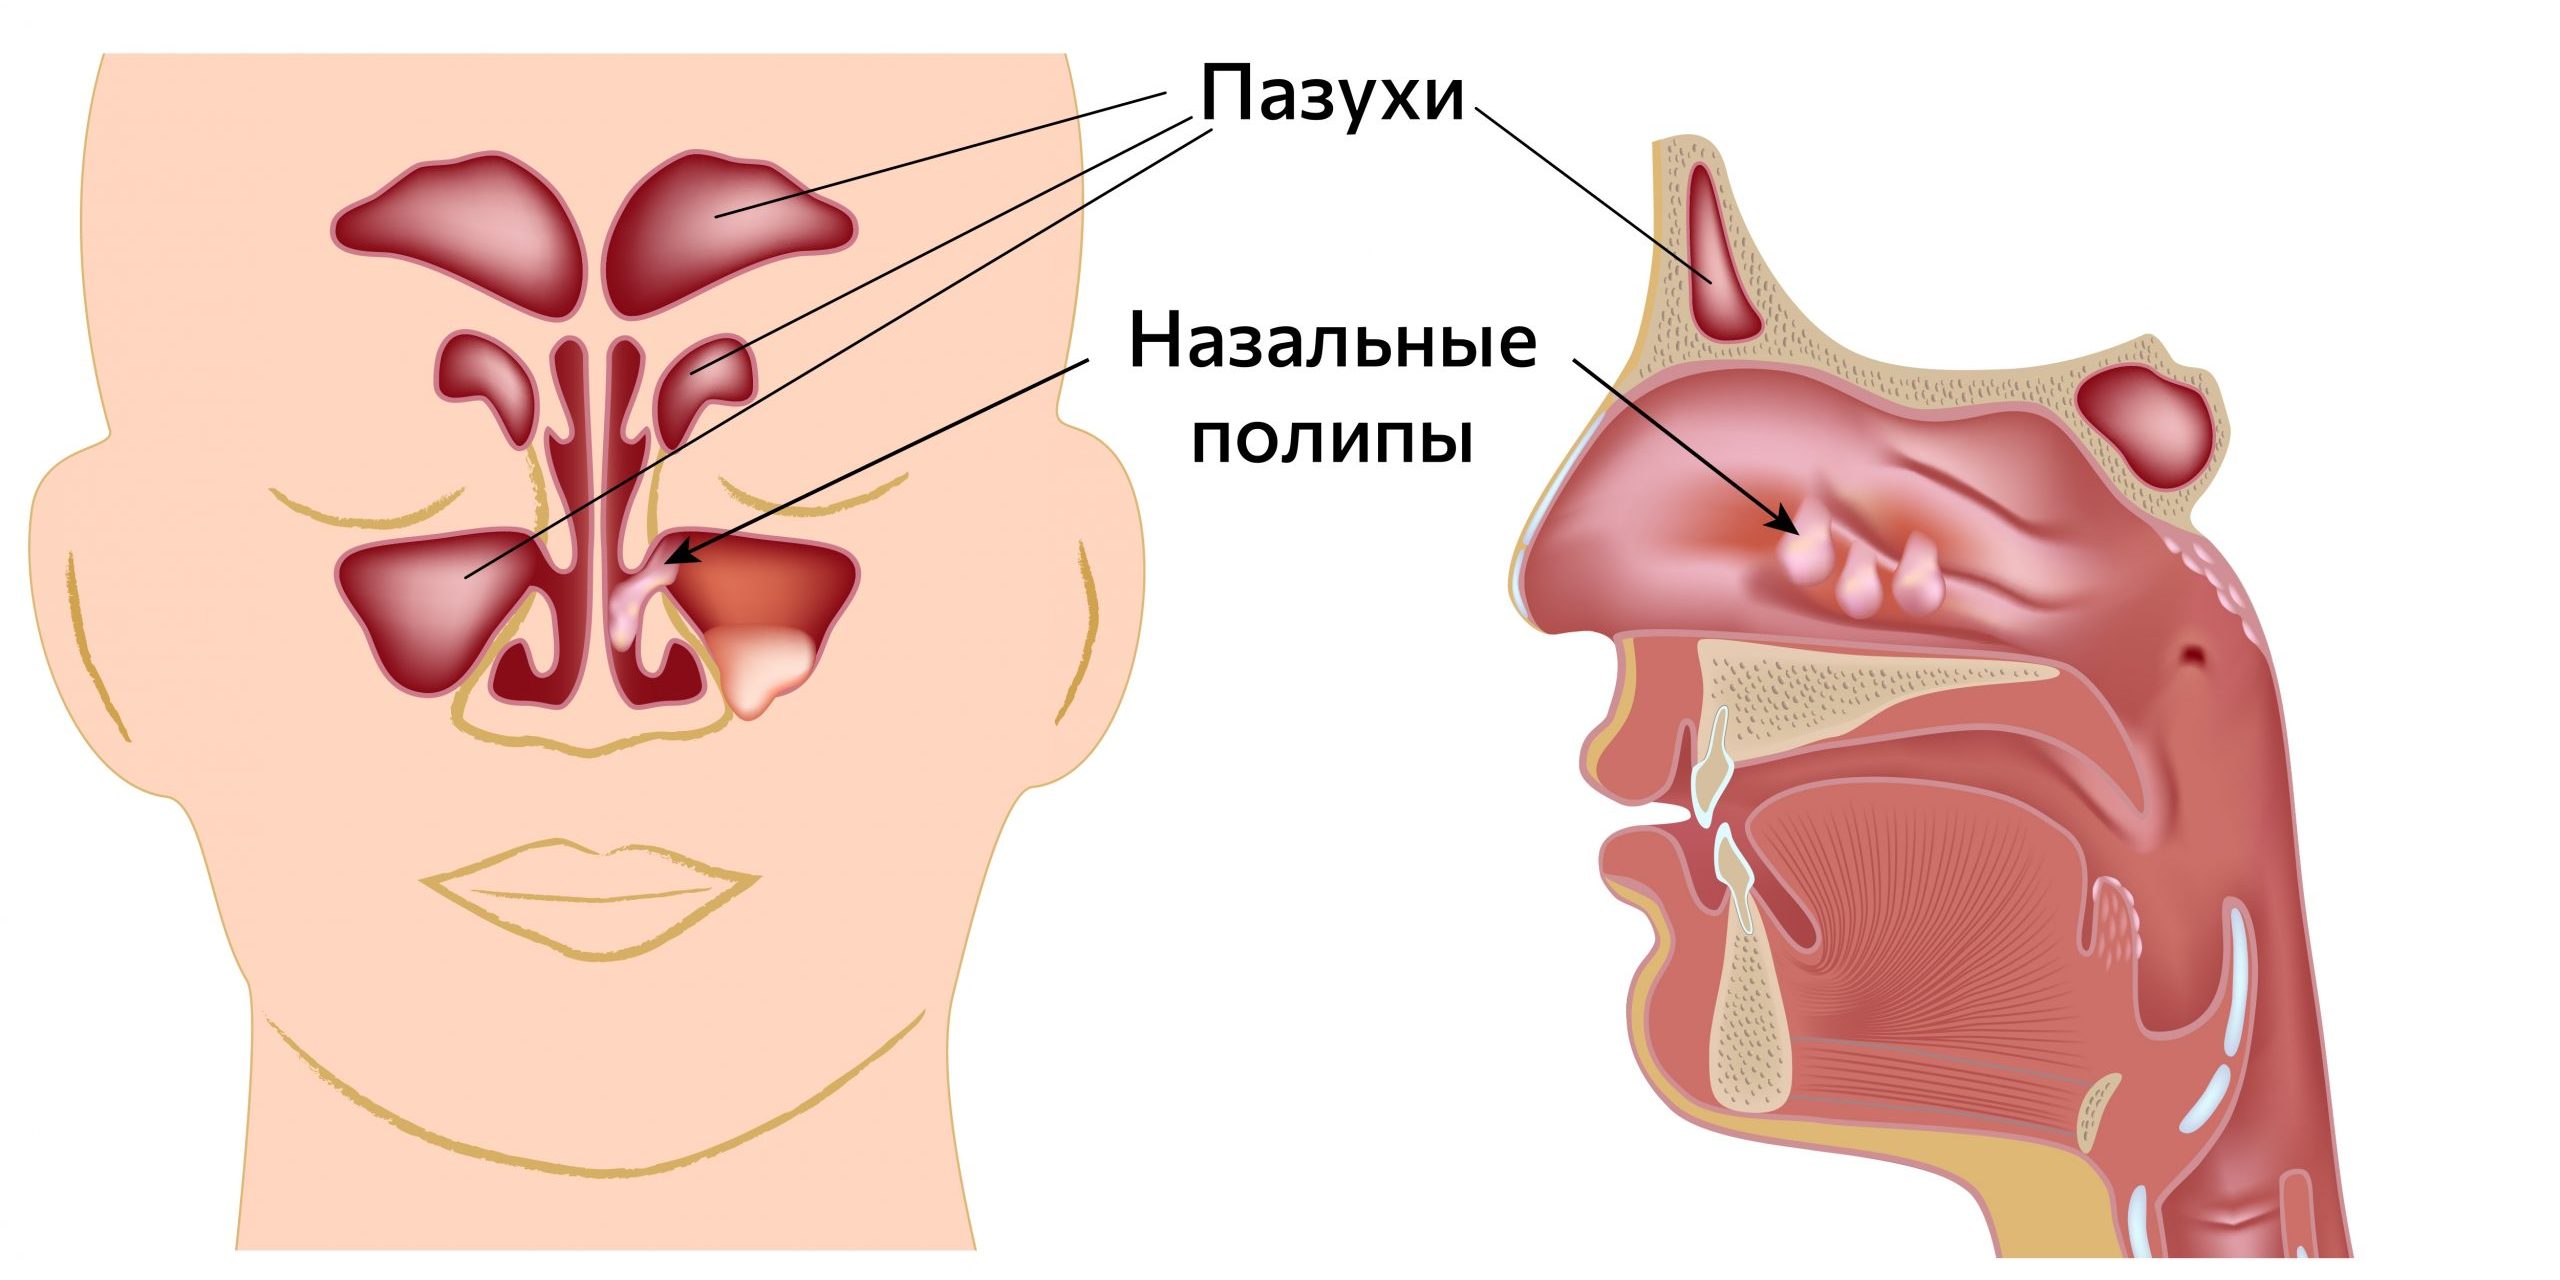 Симптомы полипов анального канала